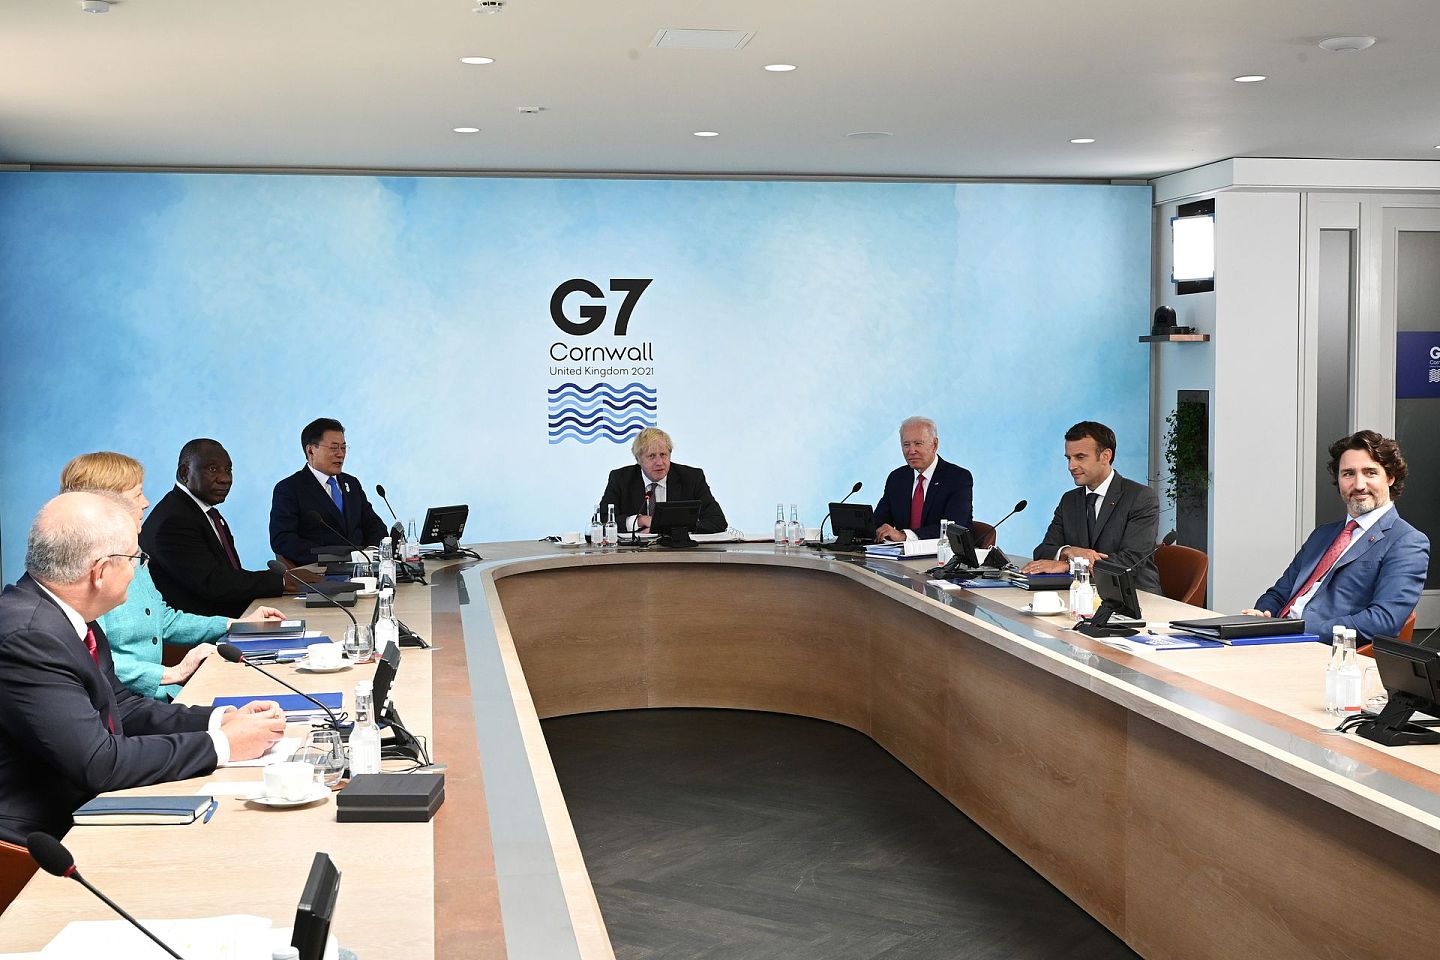 七国集团（G7）峰会6月12日进入第二天会期，有消息人士透露，今次会议气氛良好，一改以往数年由时任美国总统特朗普出席时的混乱情况。（Reuters）